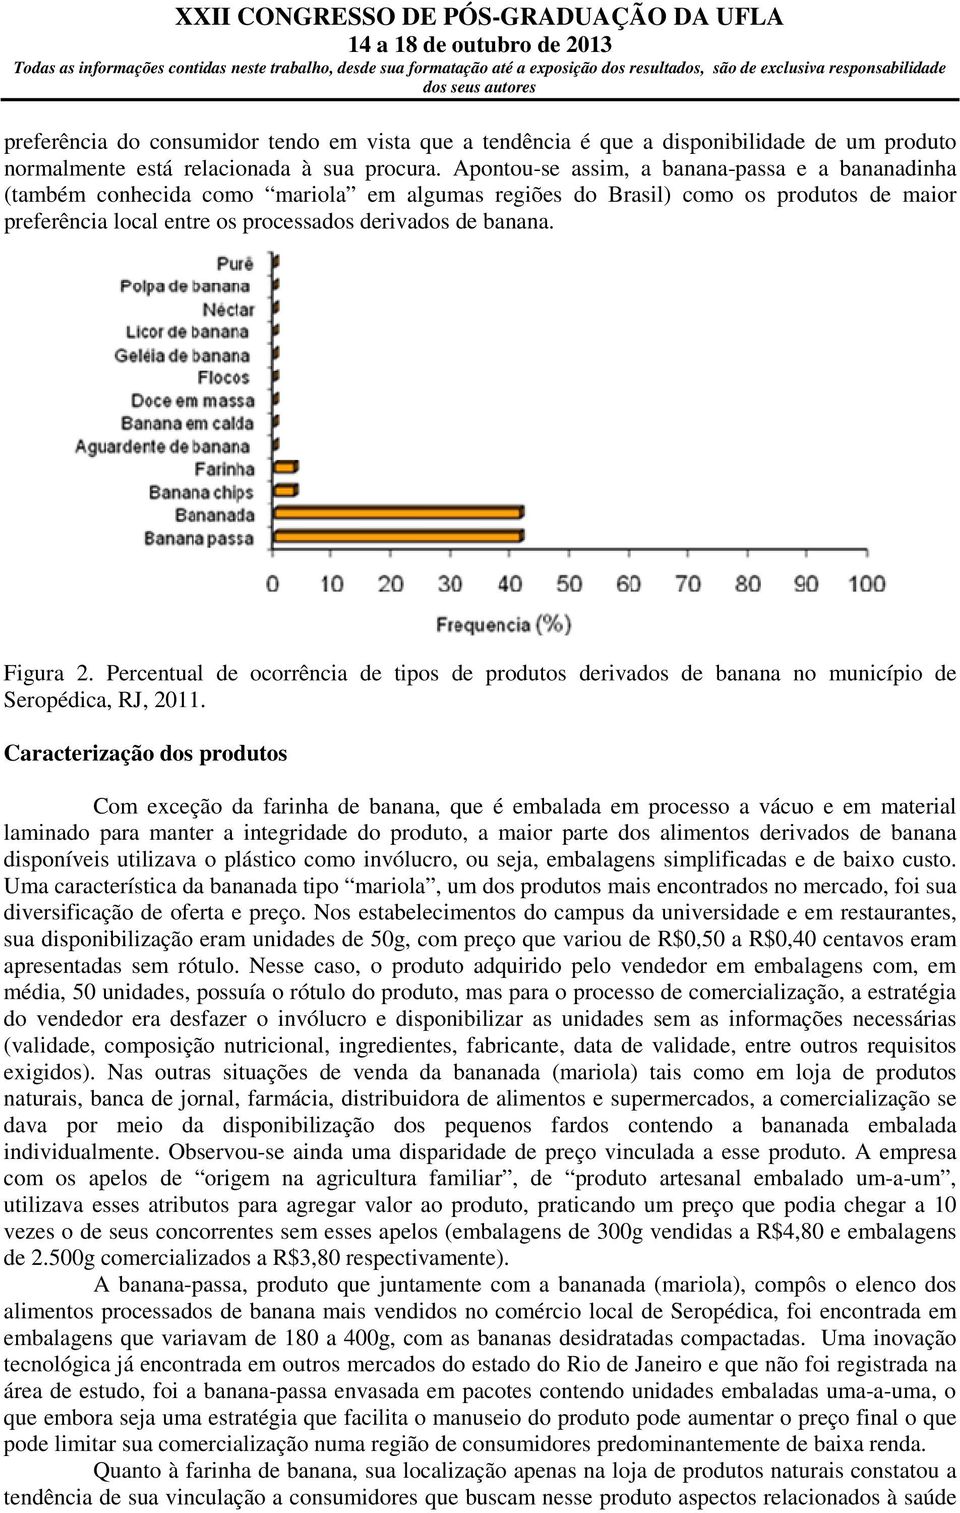 Figura 2. Percentual de ocorrência de tipos de produtos derivados de banana no município de Seropédica, RJ, 2011.